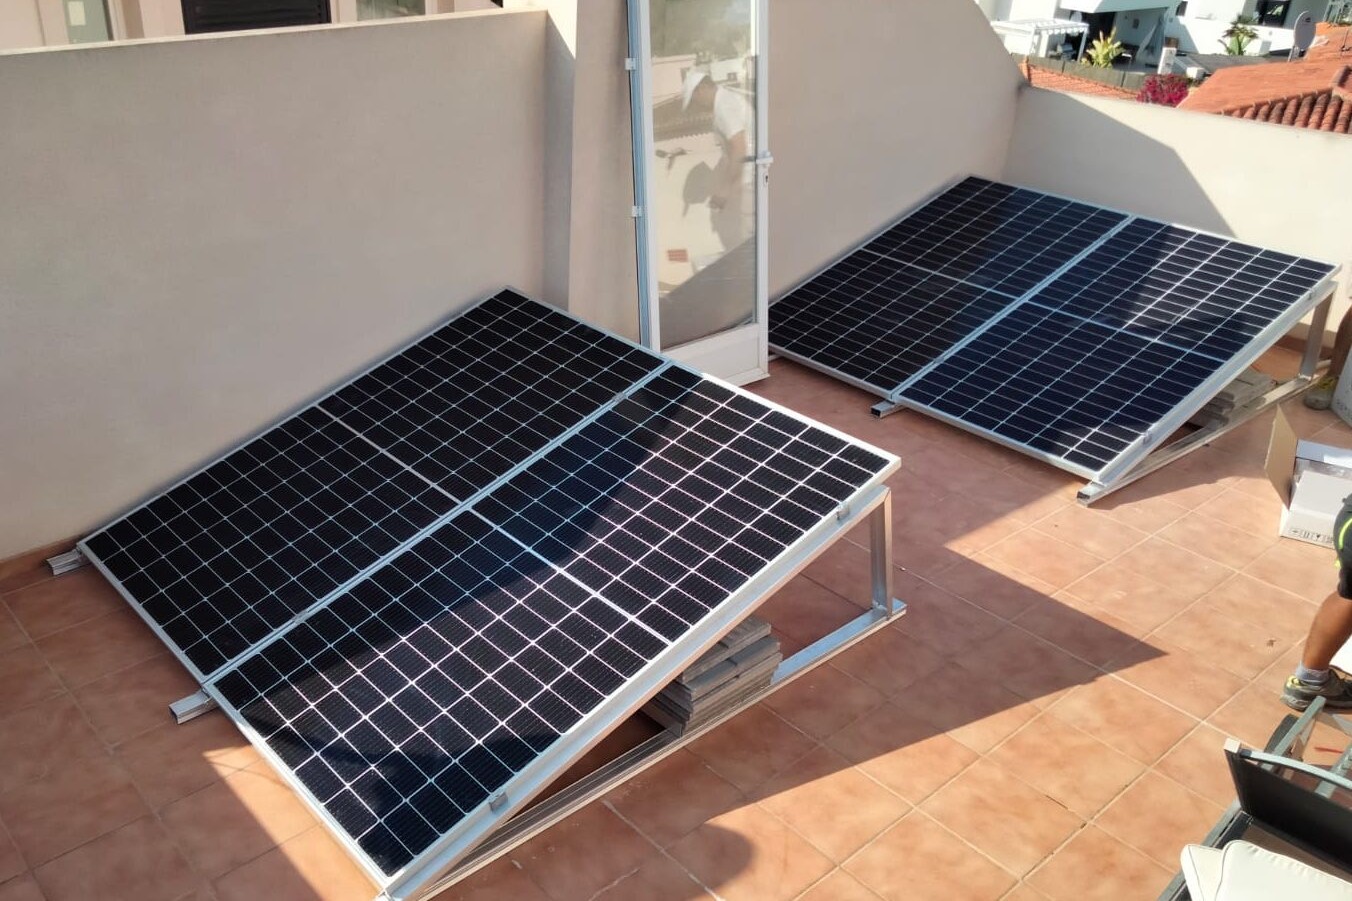 8X 460 wp Paneles Solares, Alfaz del Pi, Alicante (Sistema híbrido)